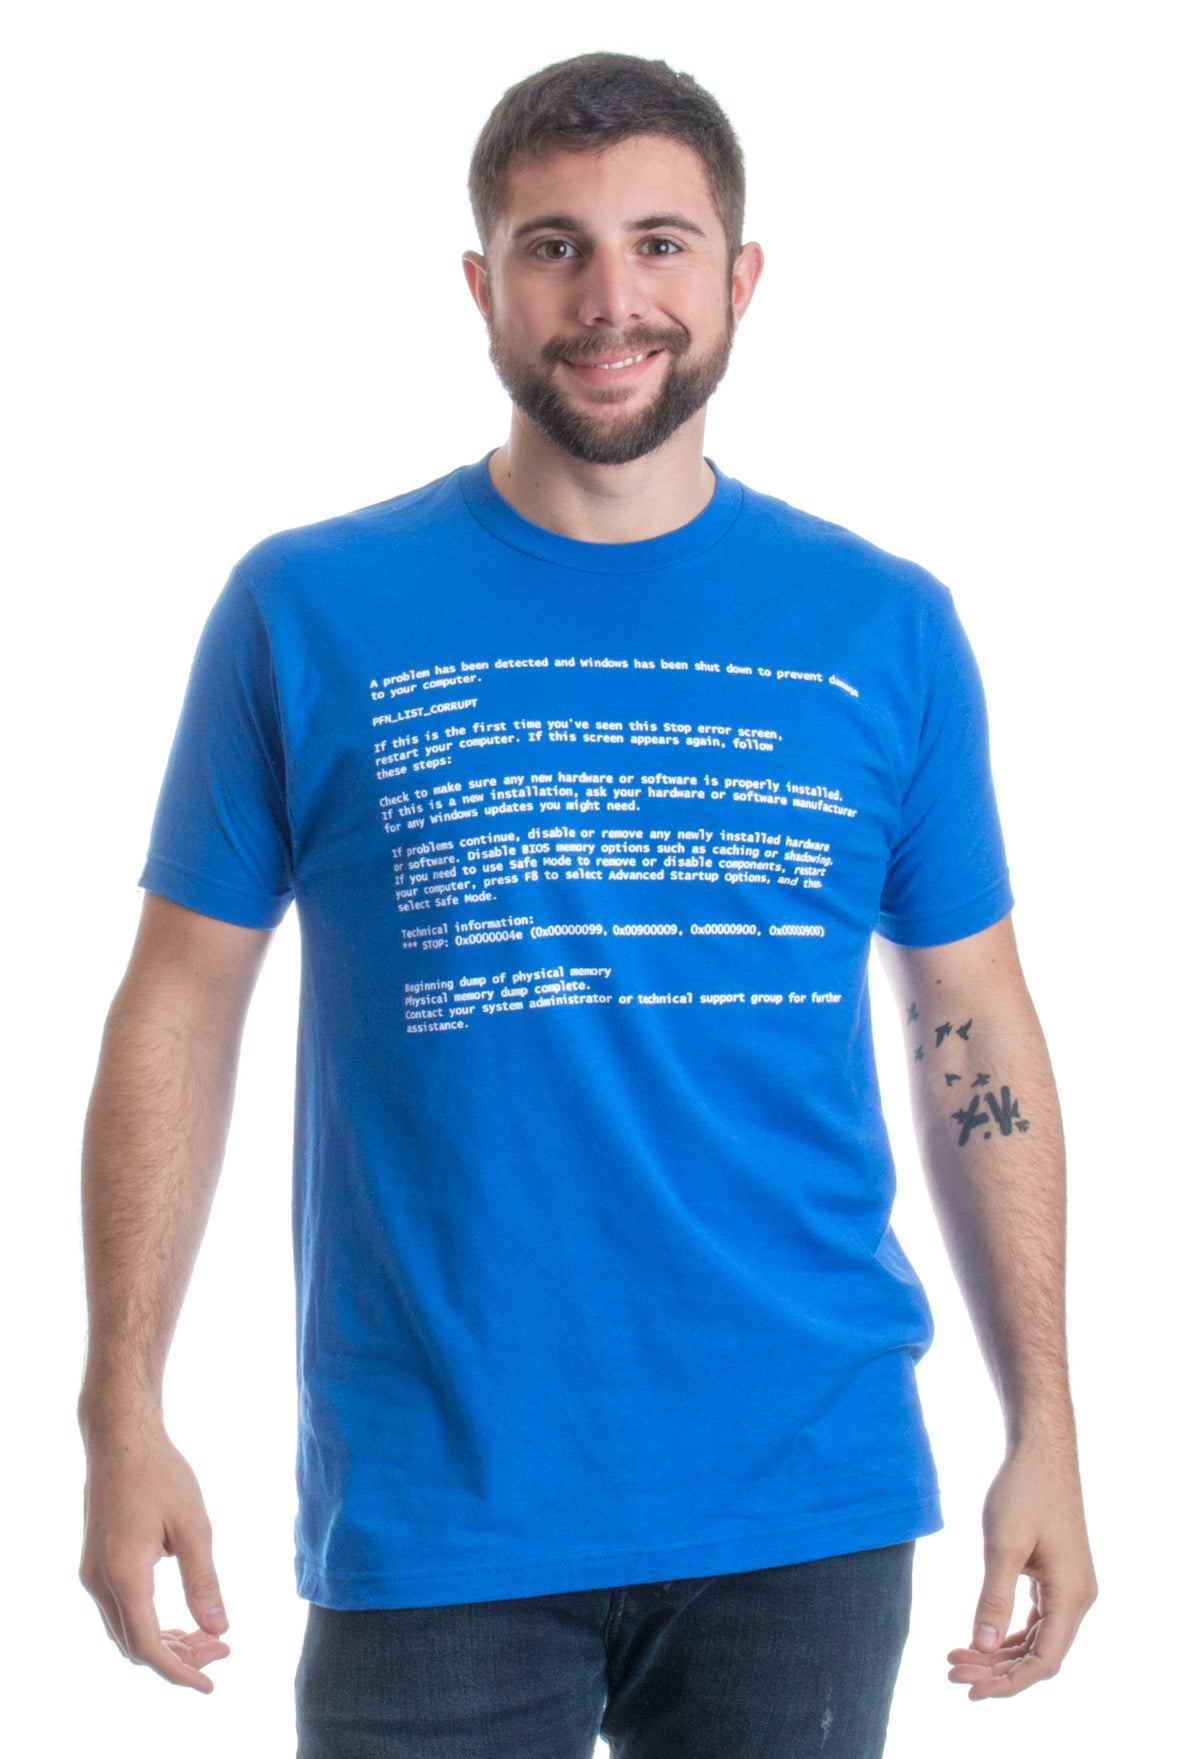 Blue Screen of Death | Geeky Windows Error, Funny Computer Nerd Unisex T-shirt